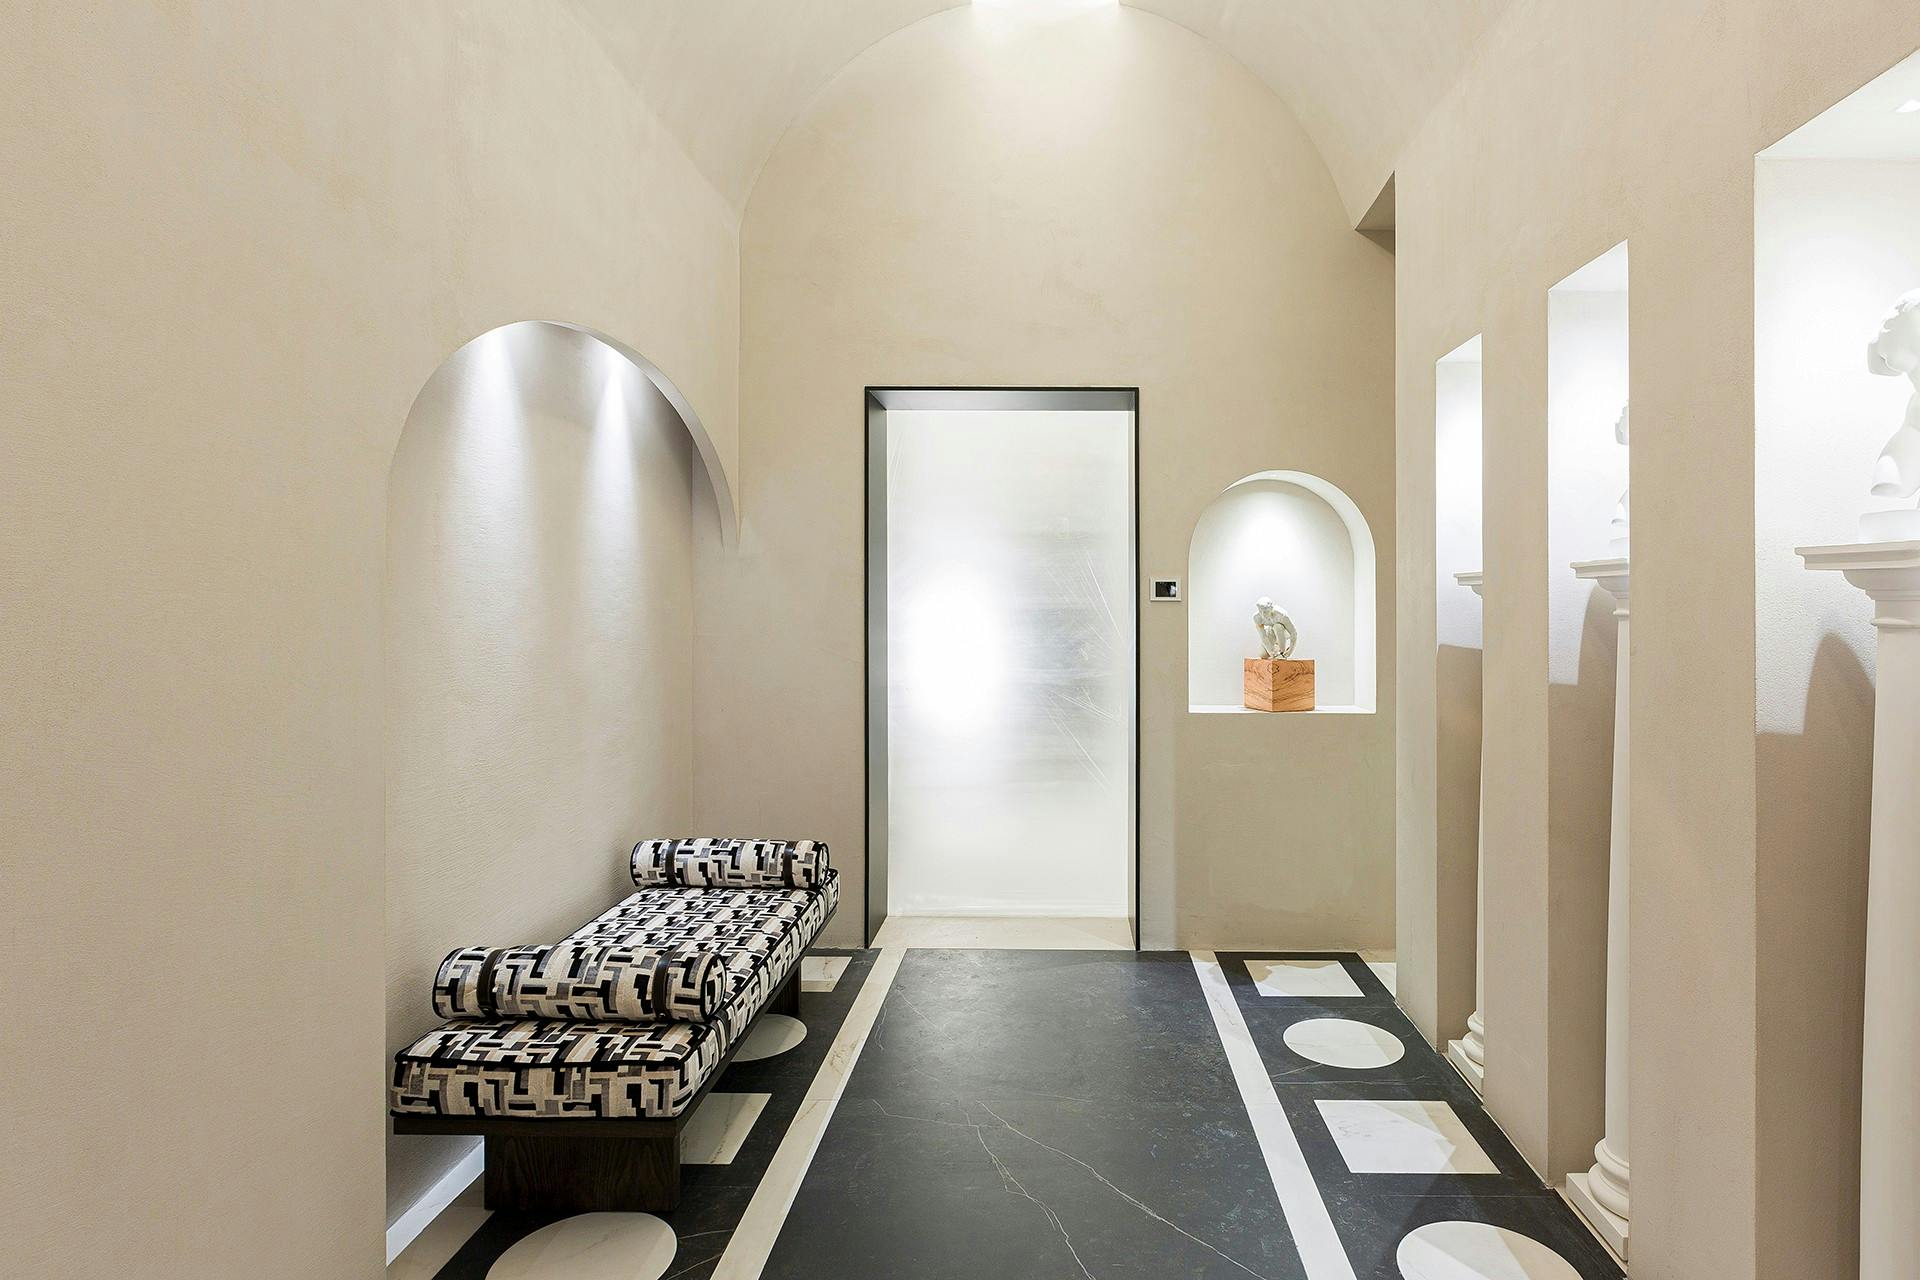 Imagen número 80 de Un baño público contemporáneo inspirado en las termas romanas